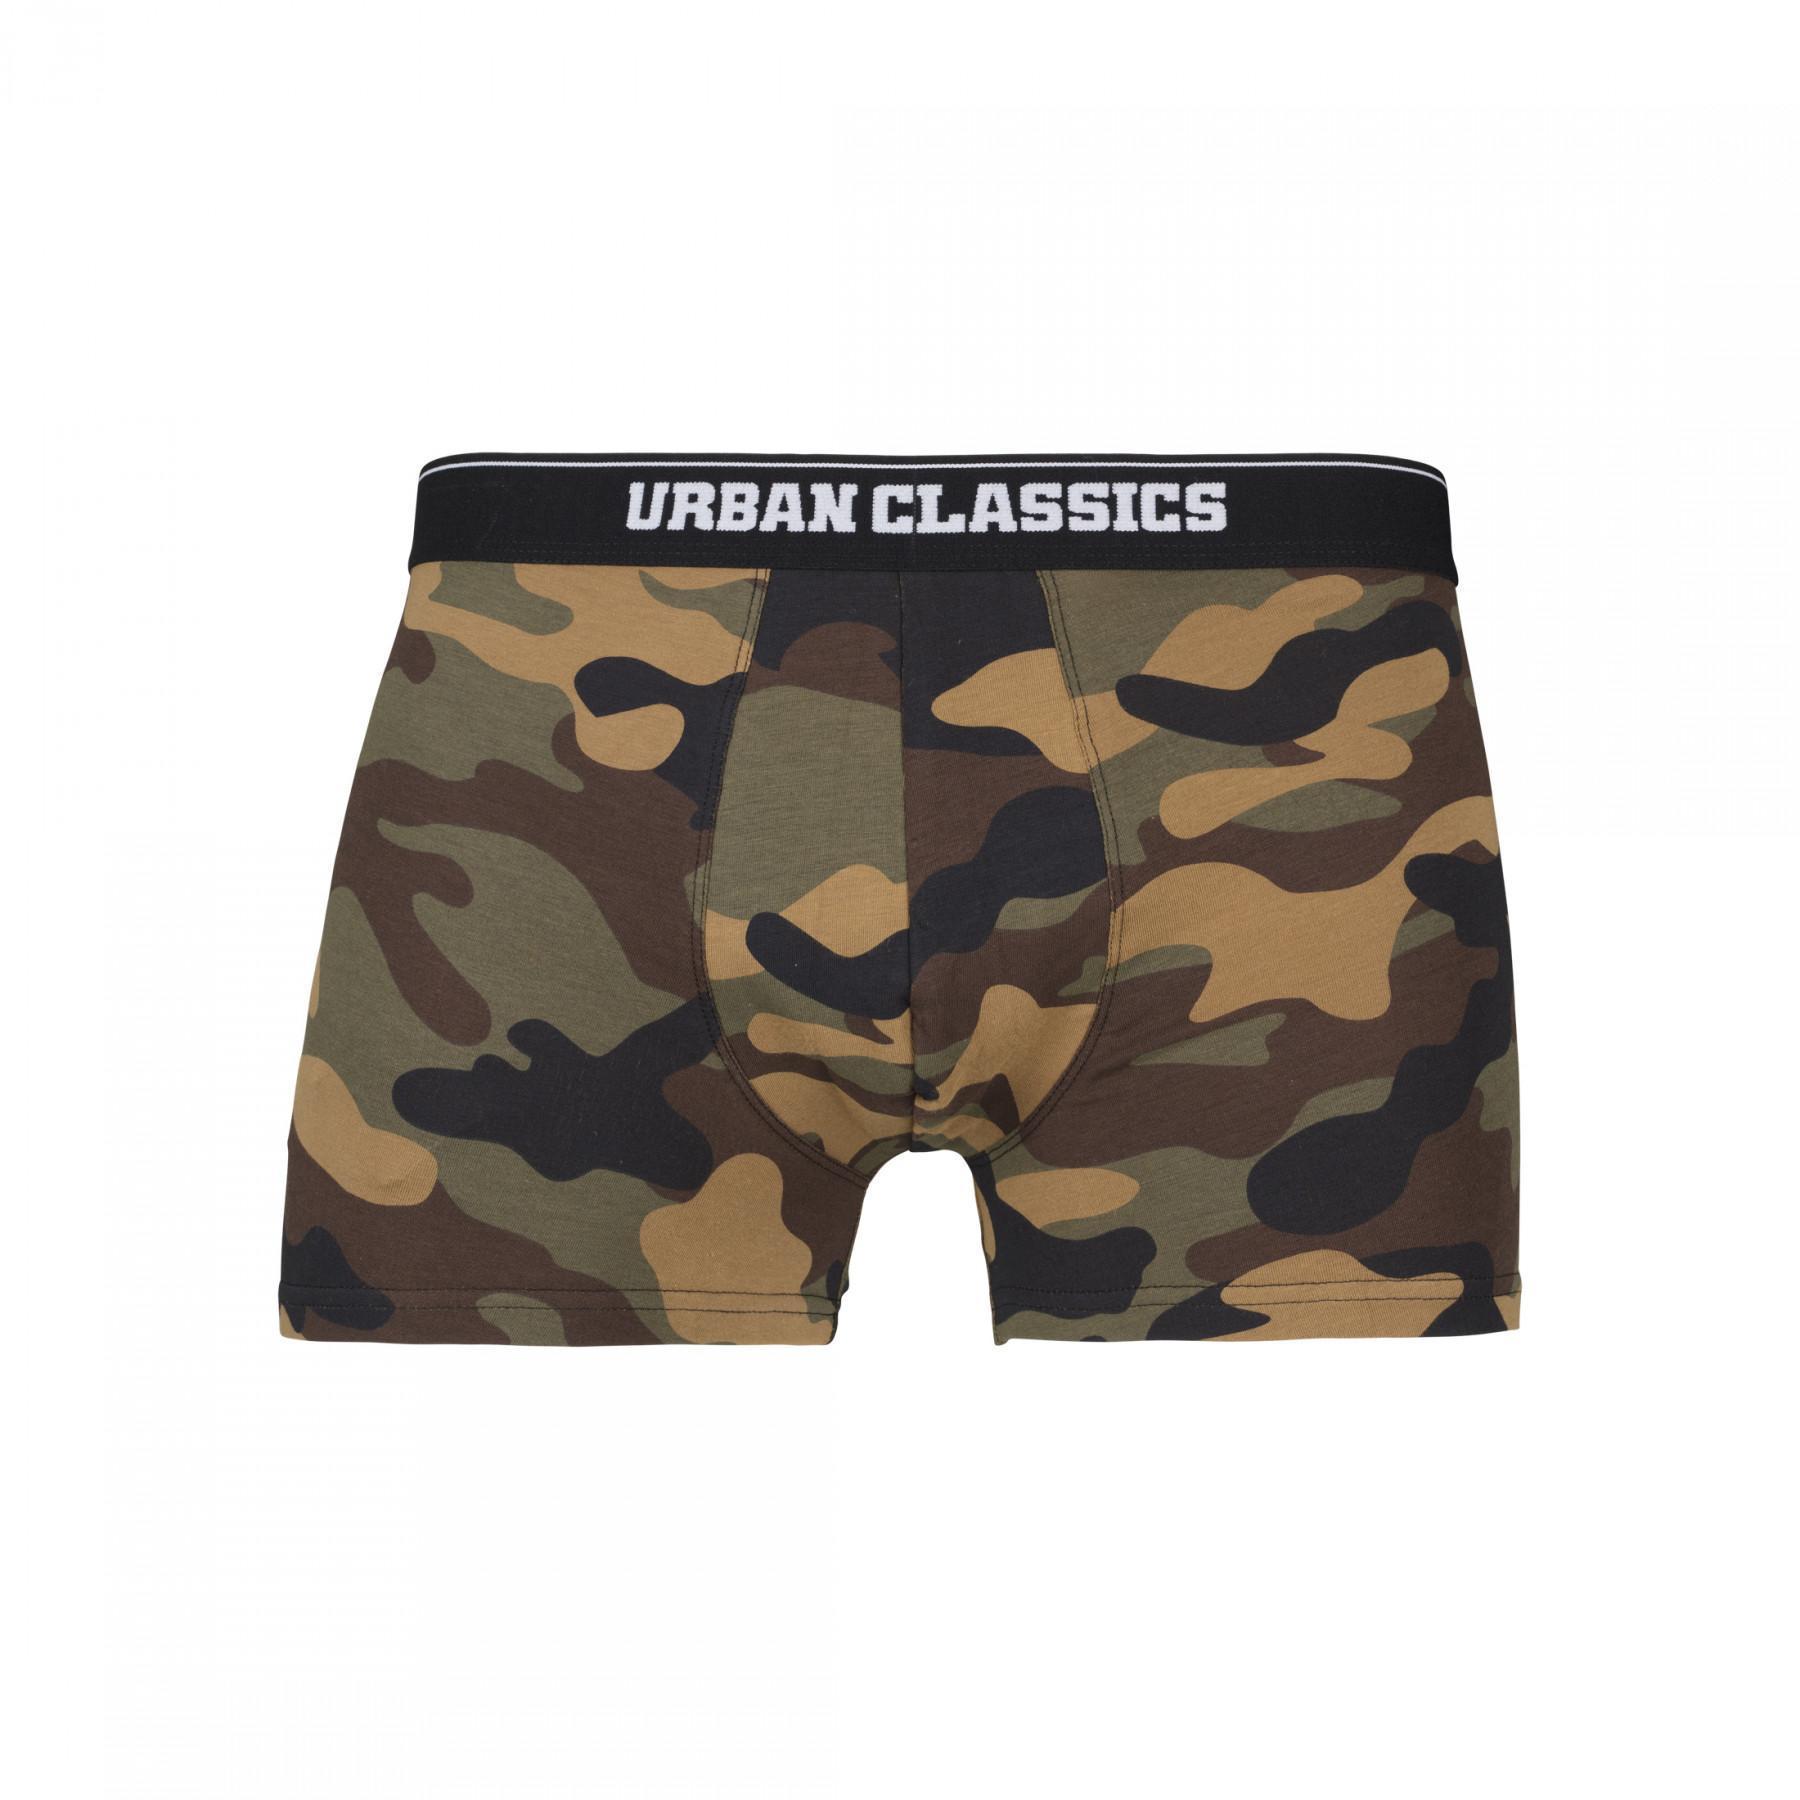 Boxers Urban Classics camo (2pcs)